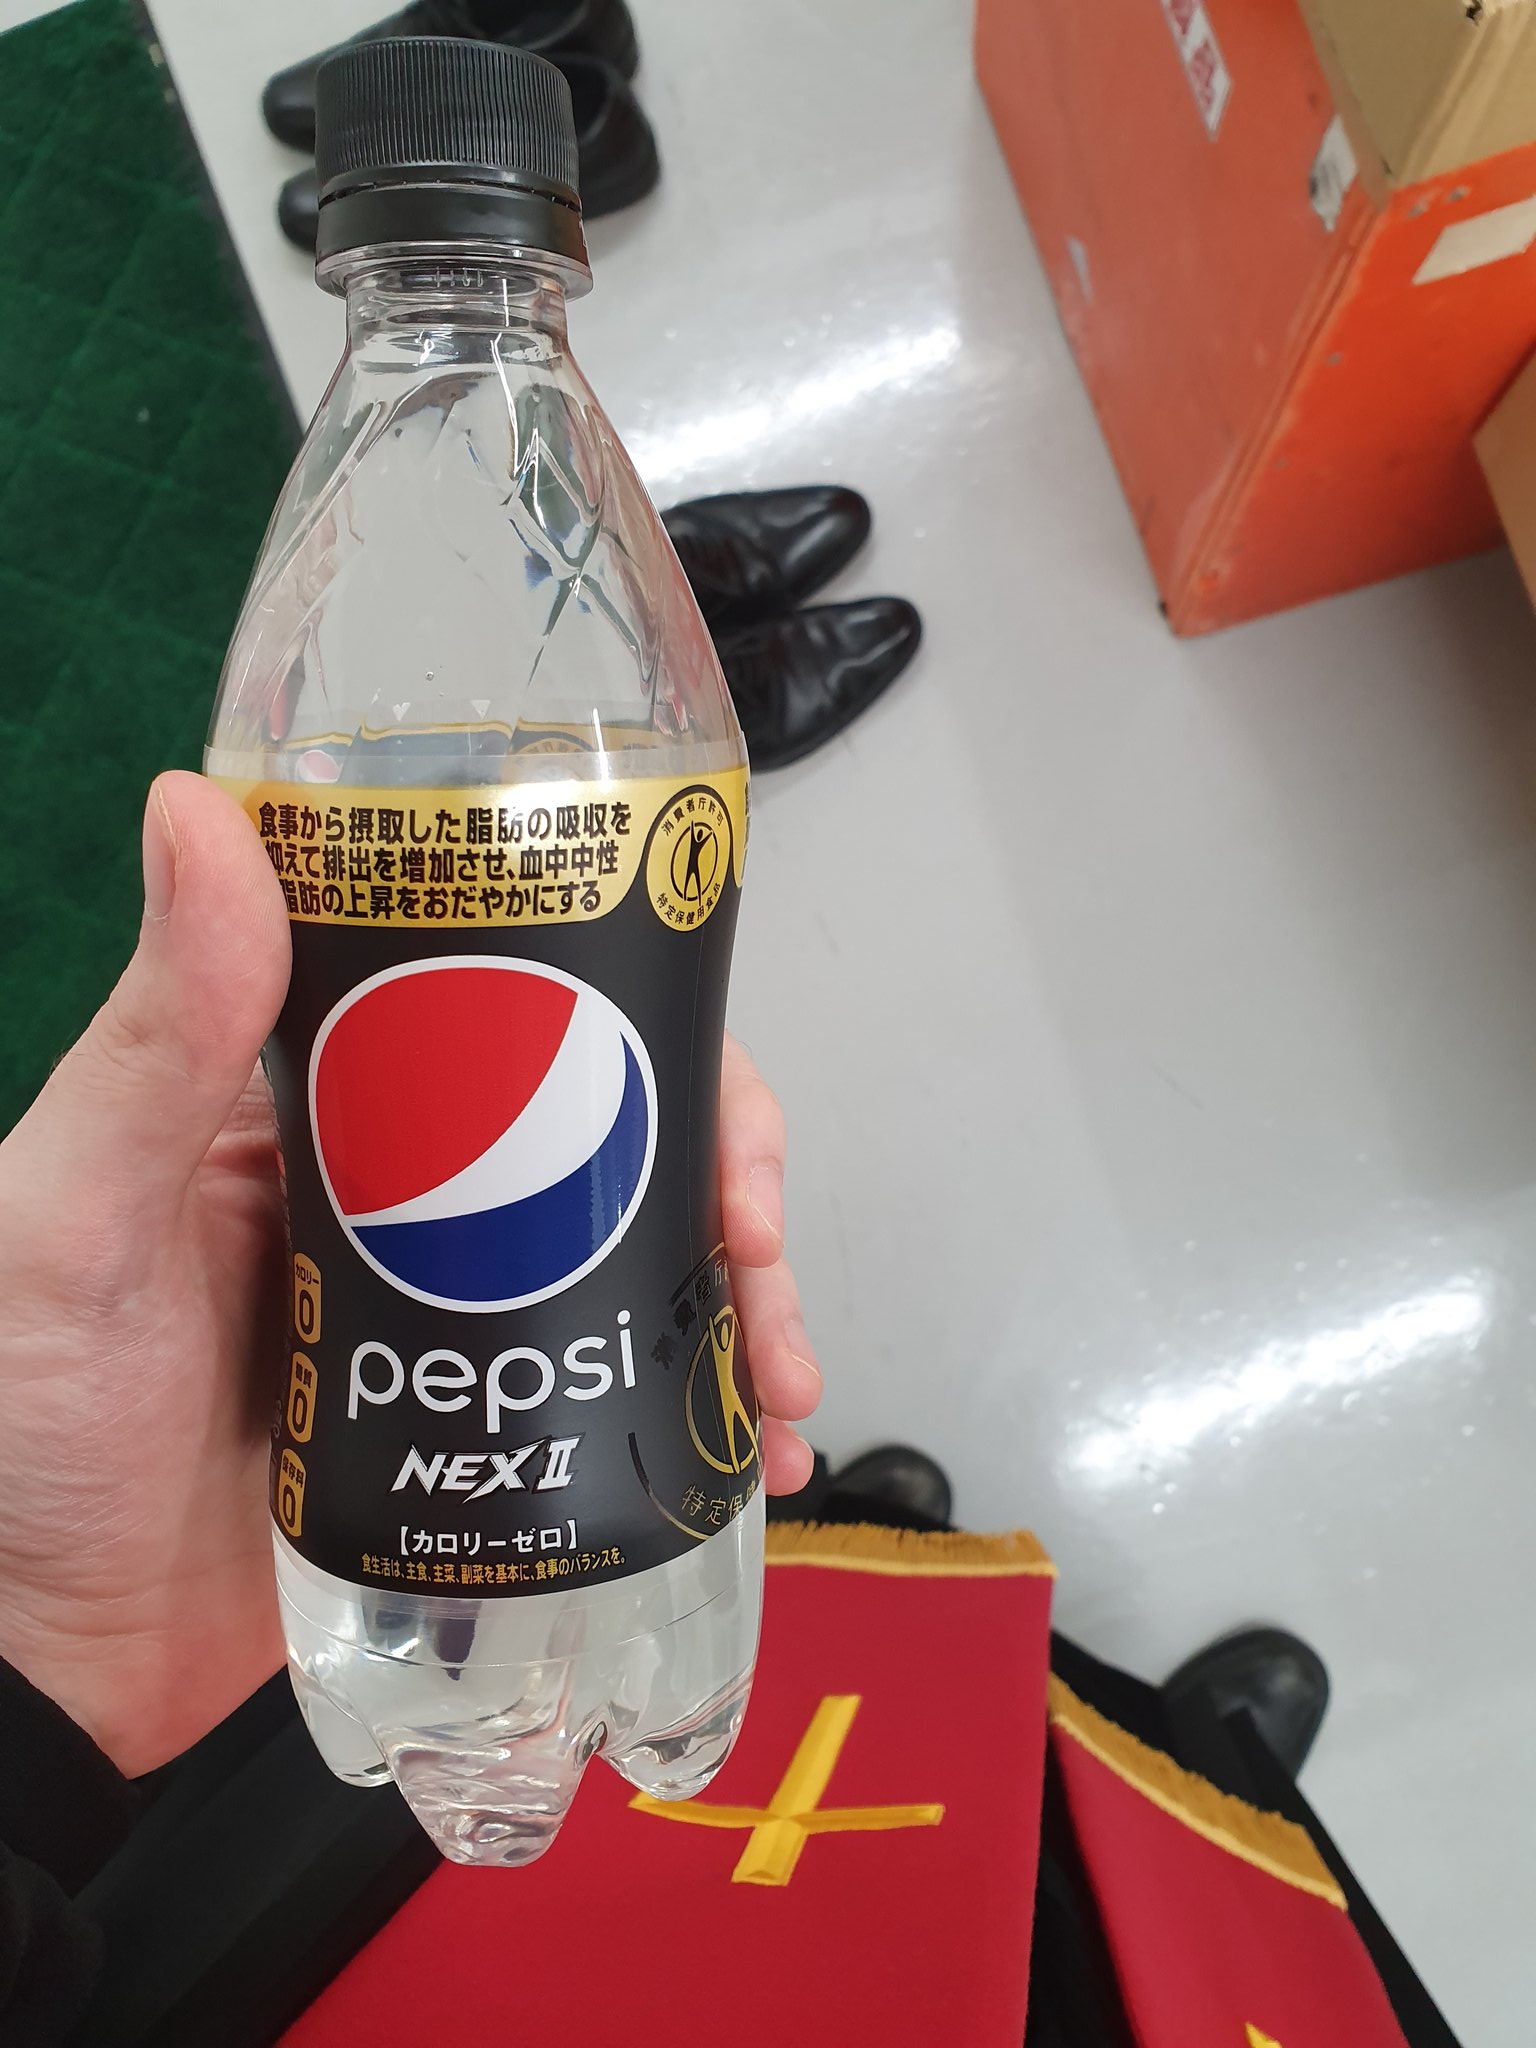 ⛩ Ryo Saeba ⛩ on Twitter: "Le nouveau Pepsi : Pepsi Nex II avec un beau  combo : 0 calories, 0 conservateurs, 0 bicarbonate, transparent et qui fait  maigrir en brûlant les graisses 😂 https://t.co/5zktafEWoT" / Twitter